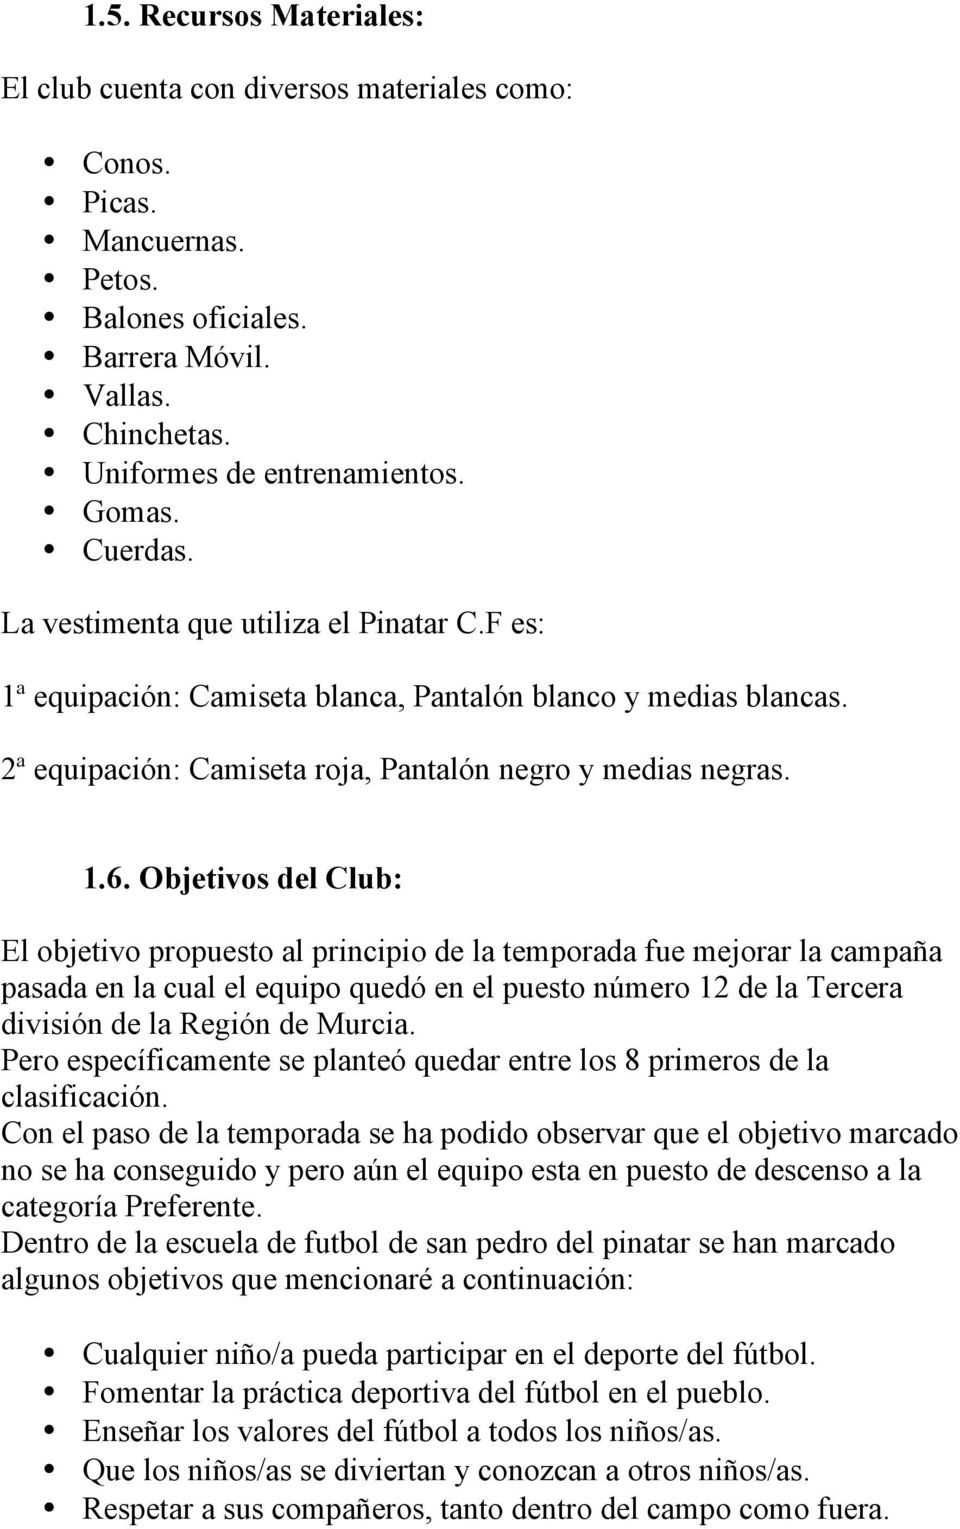 Objetivos del Club: El objetivo propuesto al principio de la temporada fue mejorar la campaña pasada en la cual el equipo quedó en el puesto número 12 de la Tercera división de la Región de Murcia.